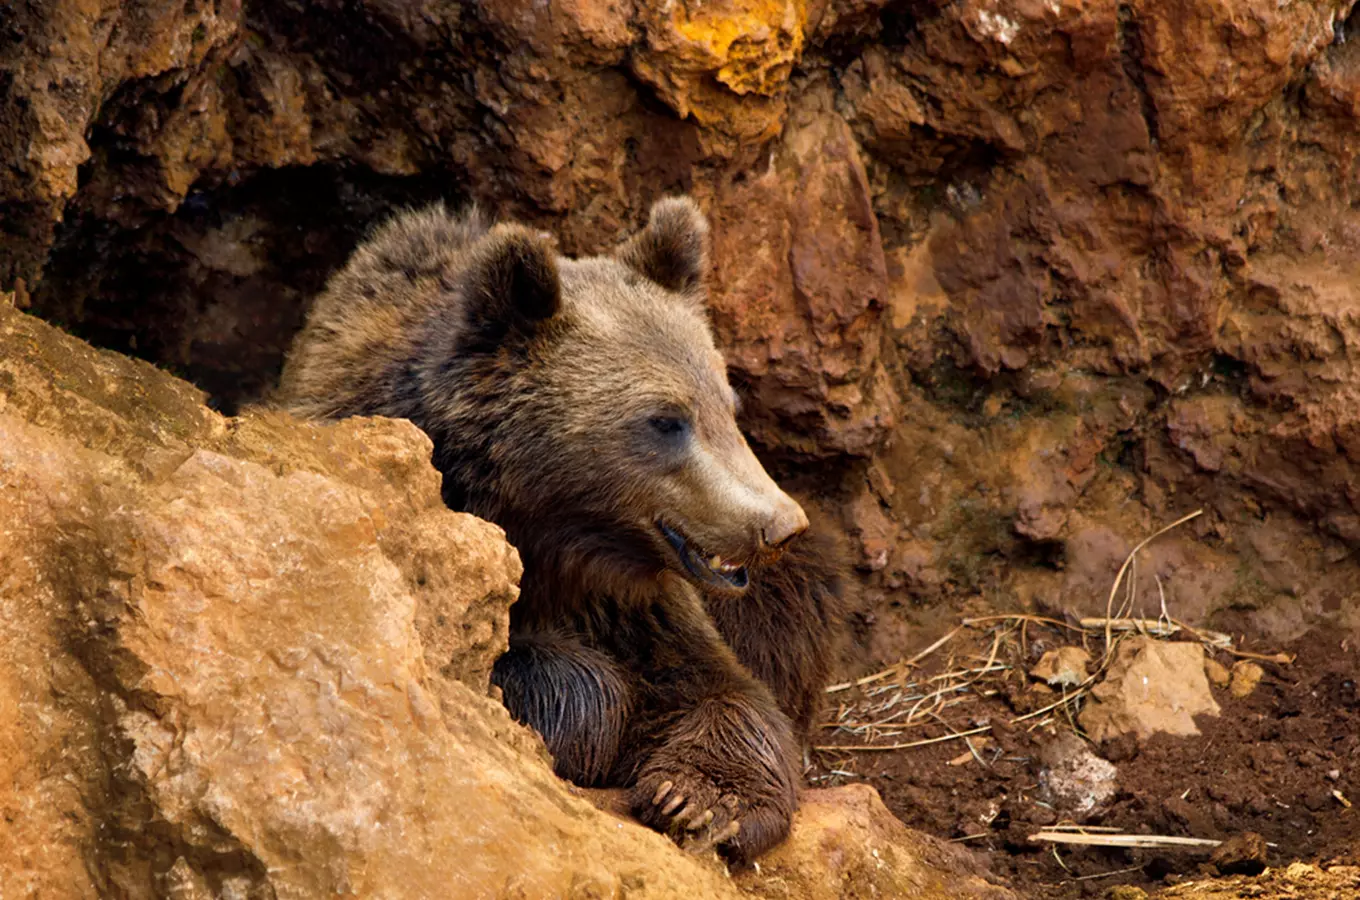 Jeskyně Výpustek zve děti na prohlídku s medvědem Brunem